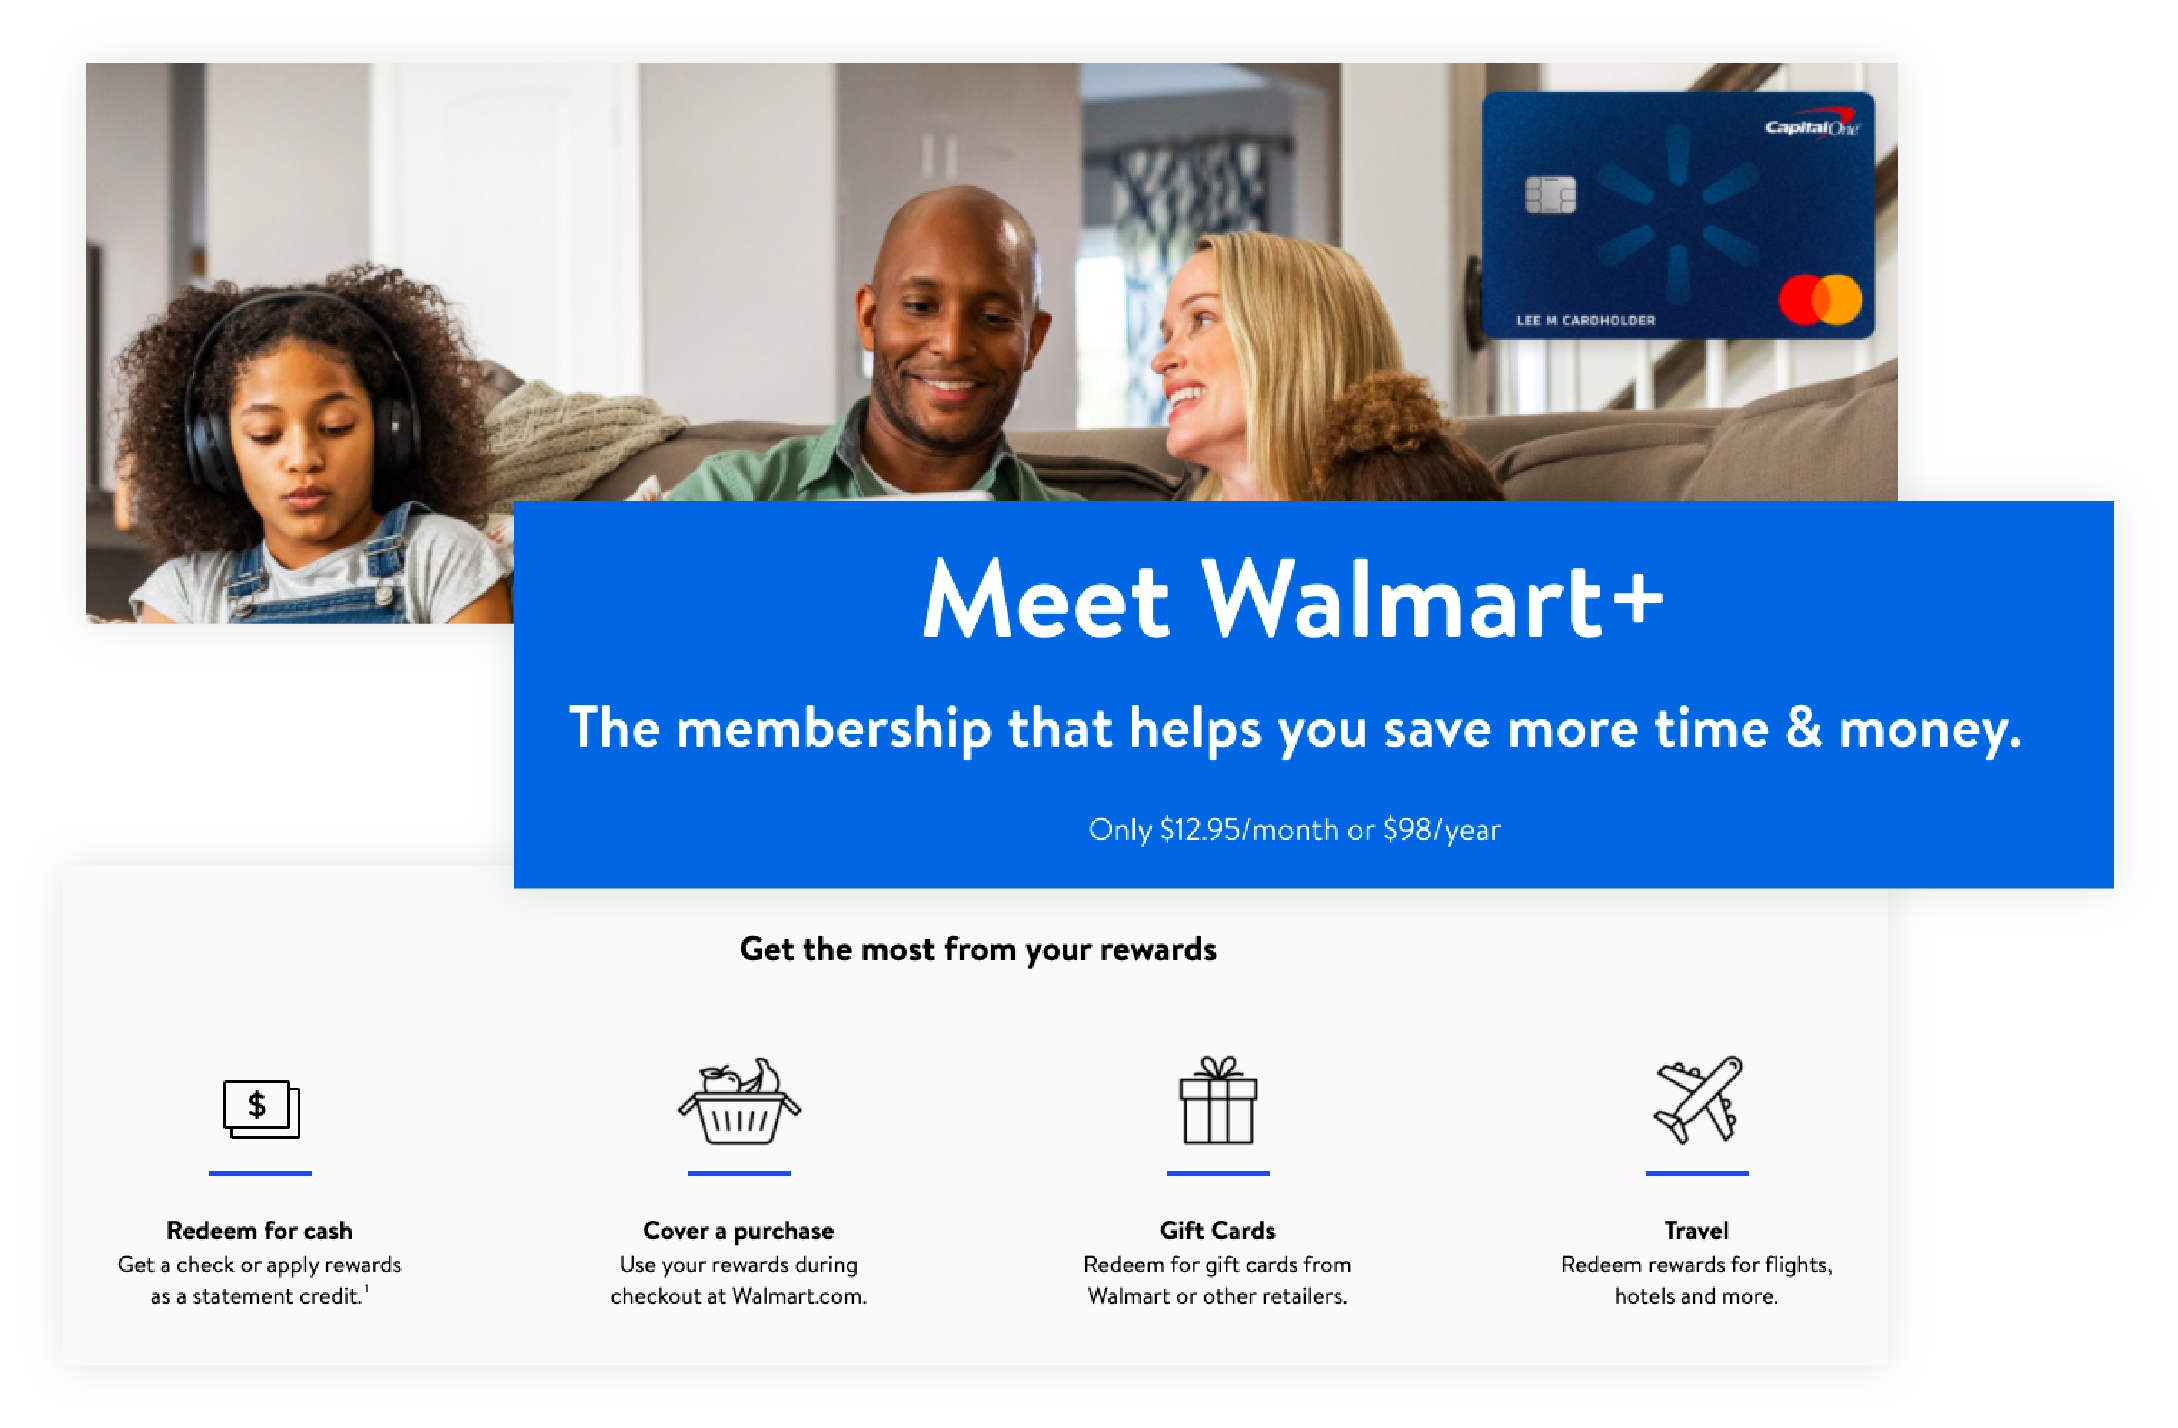 Descripción general de los beneficios para miembros del programa de recompensas de Walmart+